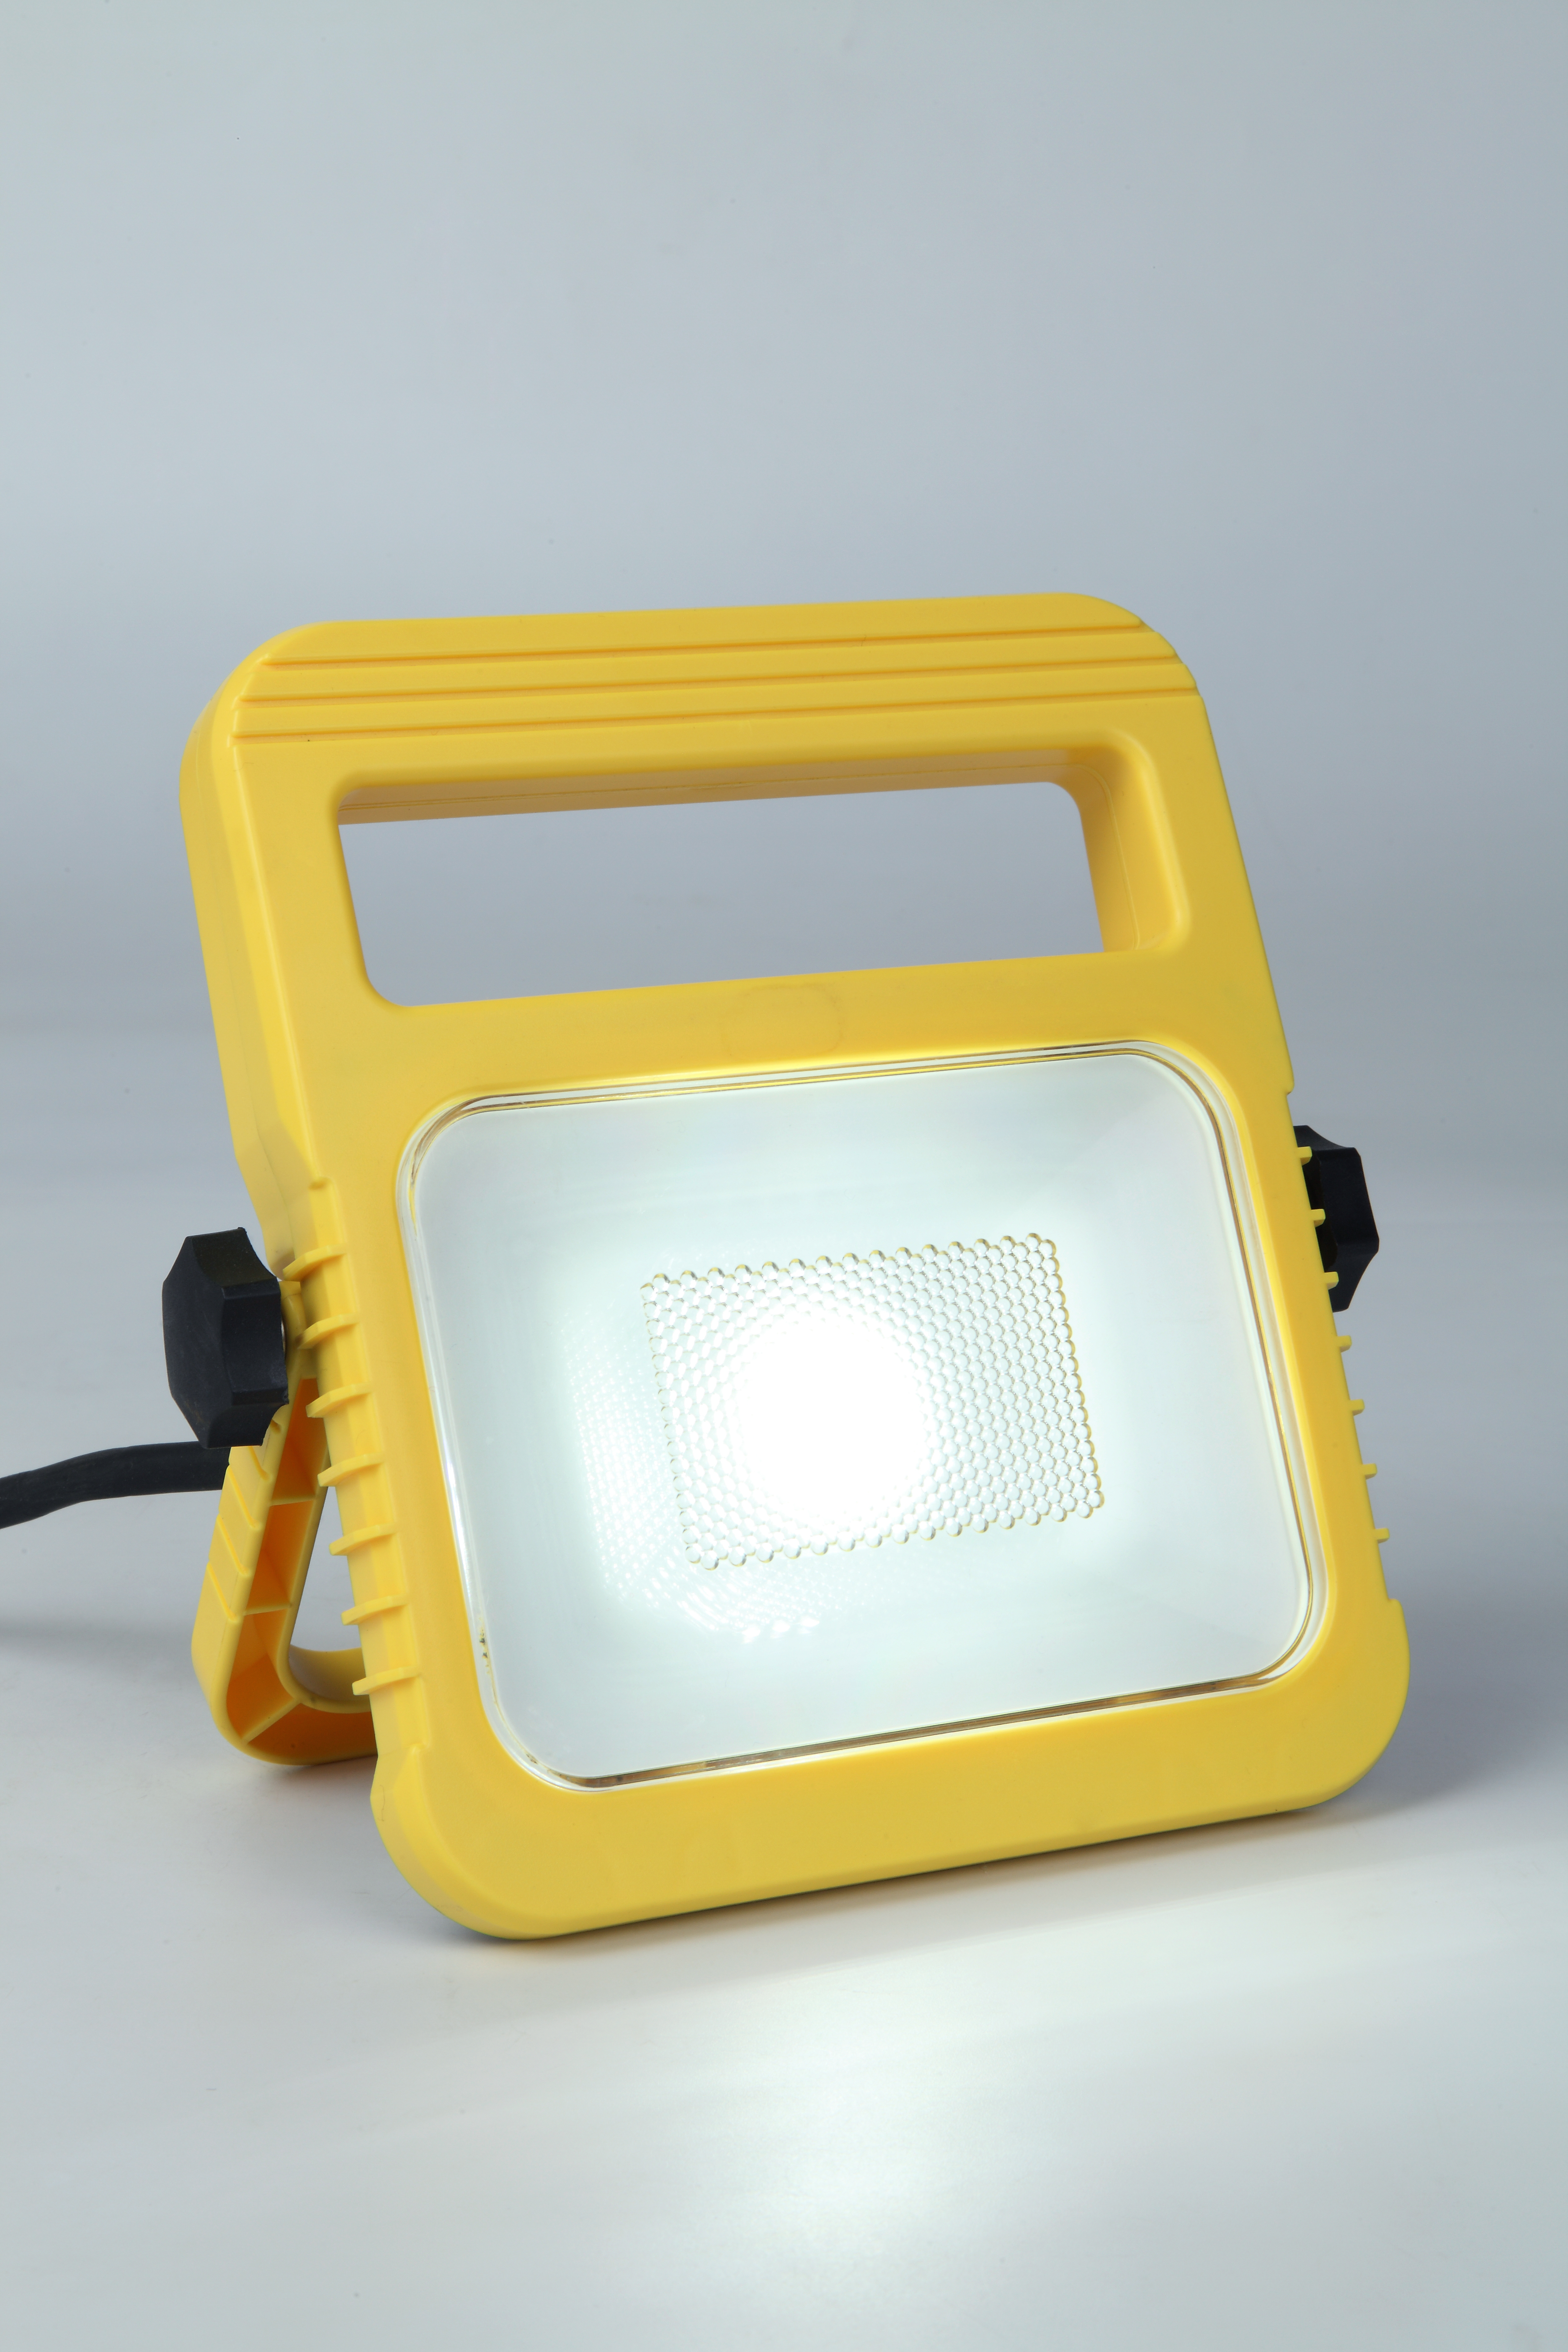 ECO-LIGHT LEUCHTEN GMBH Baustellen-Strahler Utin LED 10W gelb IP 54, 5000 K, 750 Lumen